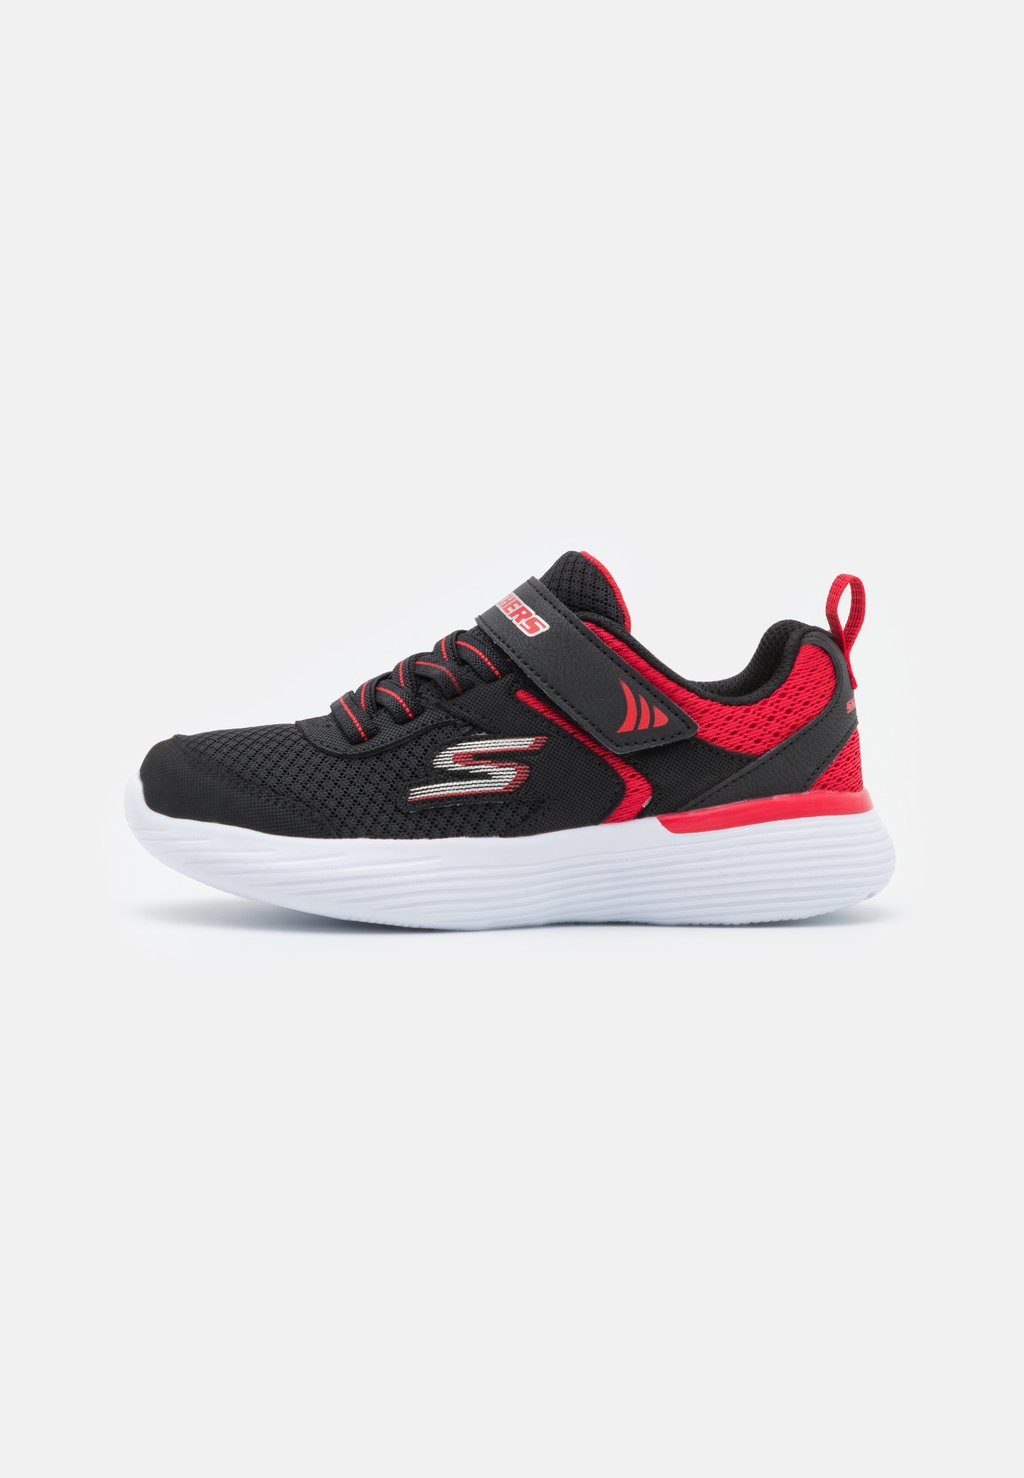 Кроссовки нейтрального цвета GO RUN 400 V2 UNISEX Skechers Performance, цвет black/red кроссовки skechers sport track red black